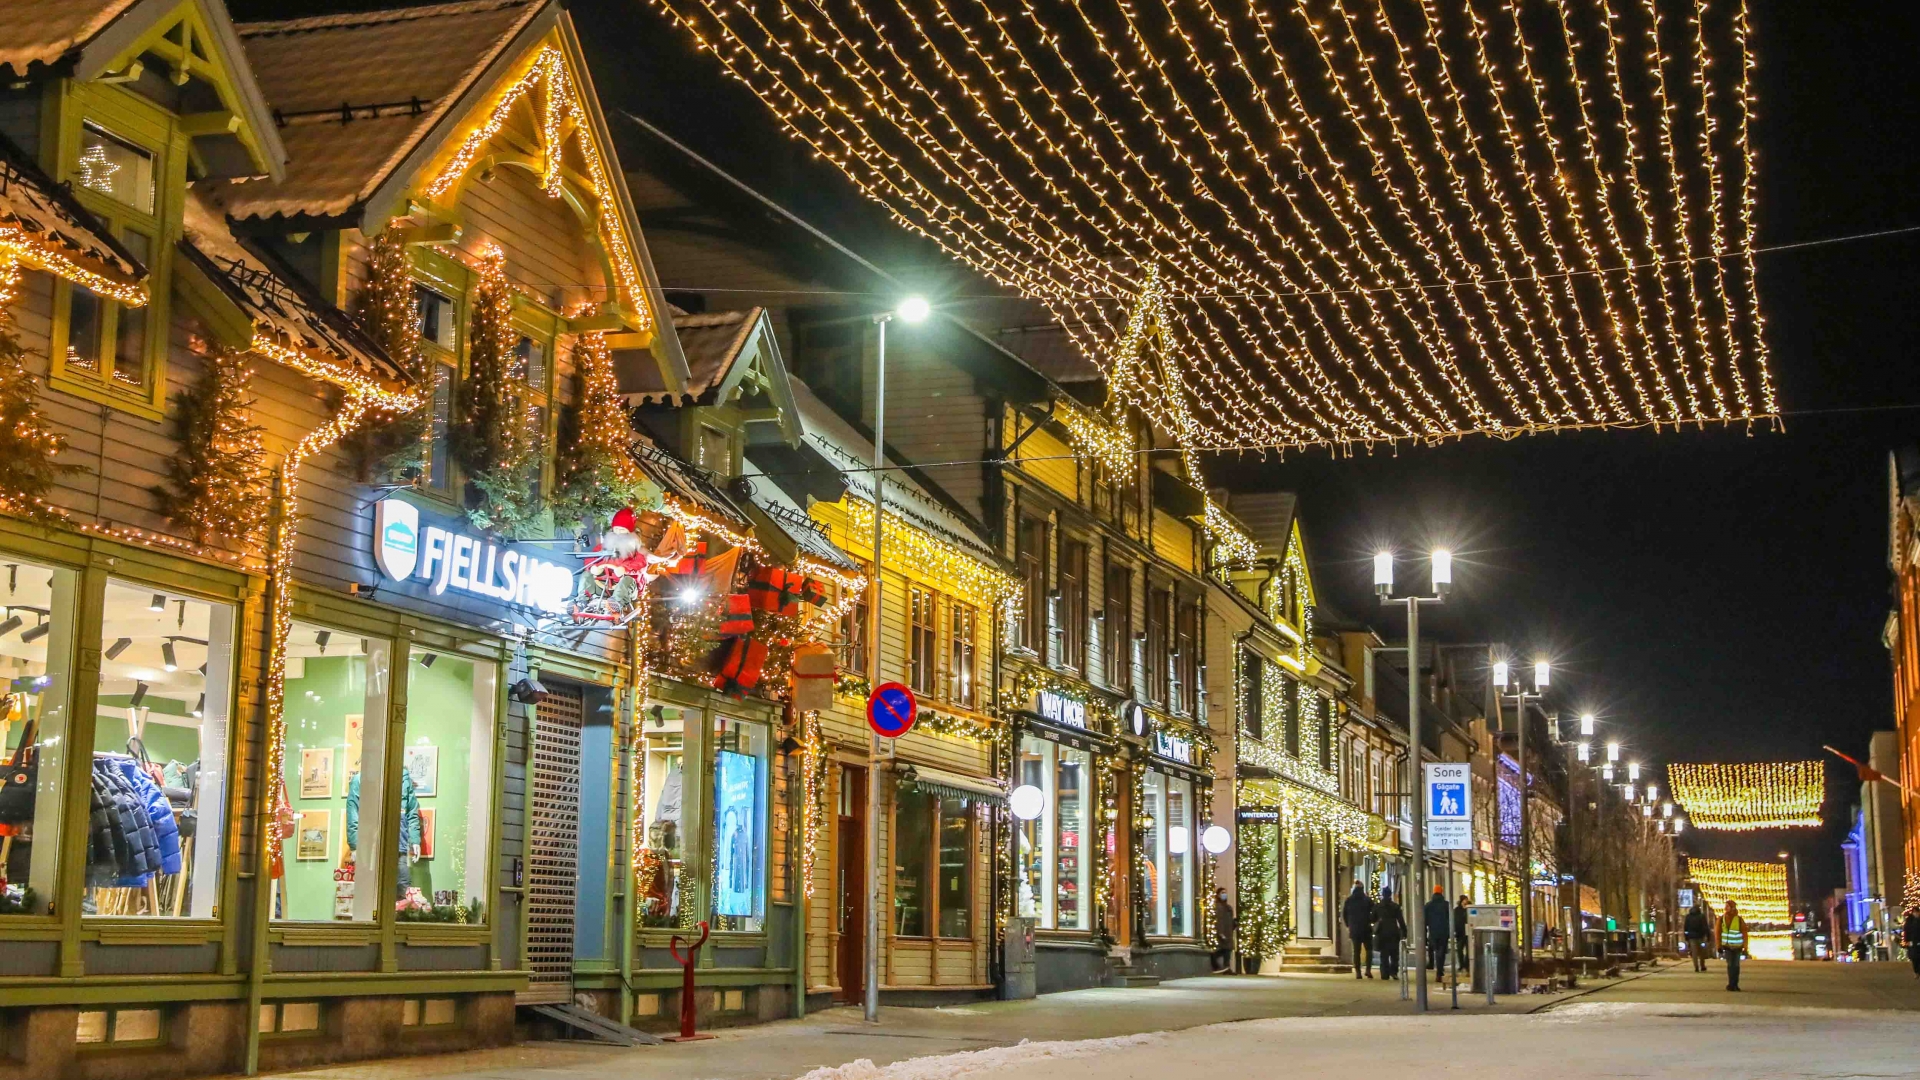 Storgata the main street in Tromsø lit for Christmas